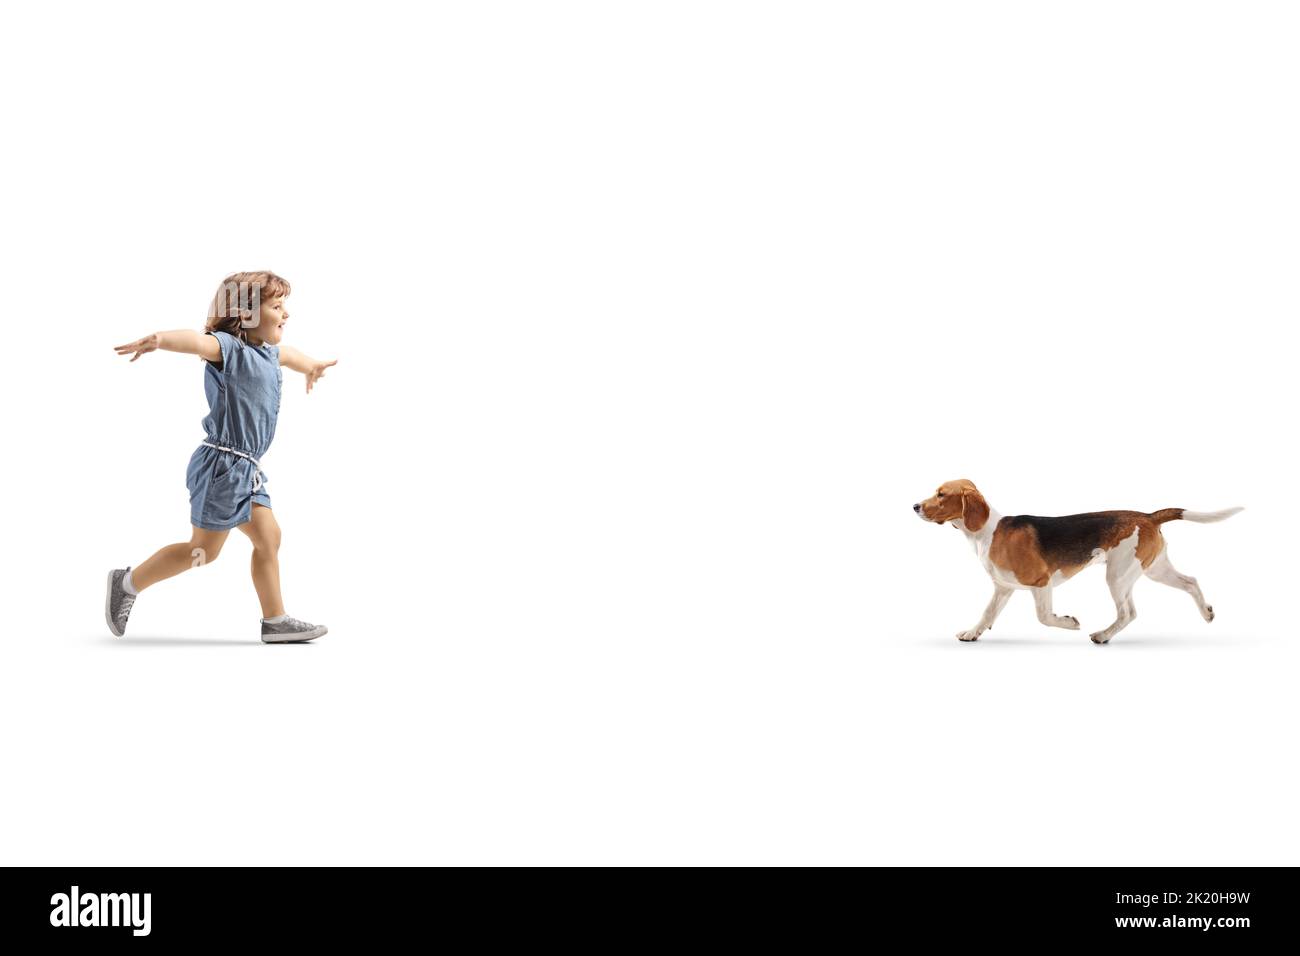 Profilo a tutta lunghezza girato di una ragazza felice che corre per abbracciare un cane isolato su sfondo bianco Foto Stock